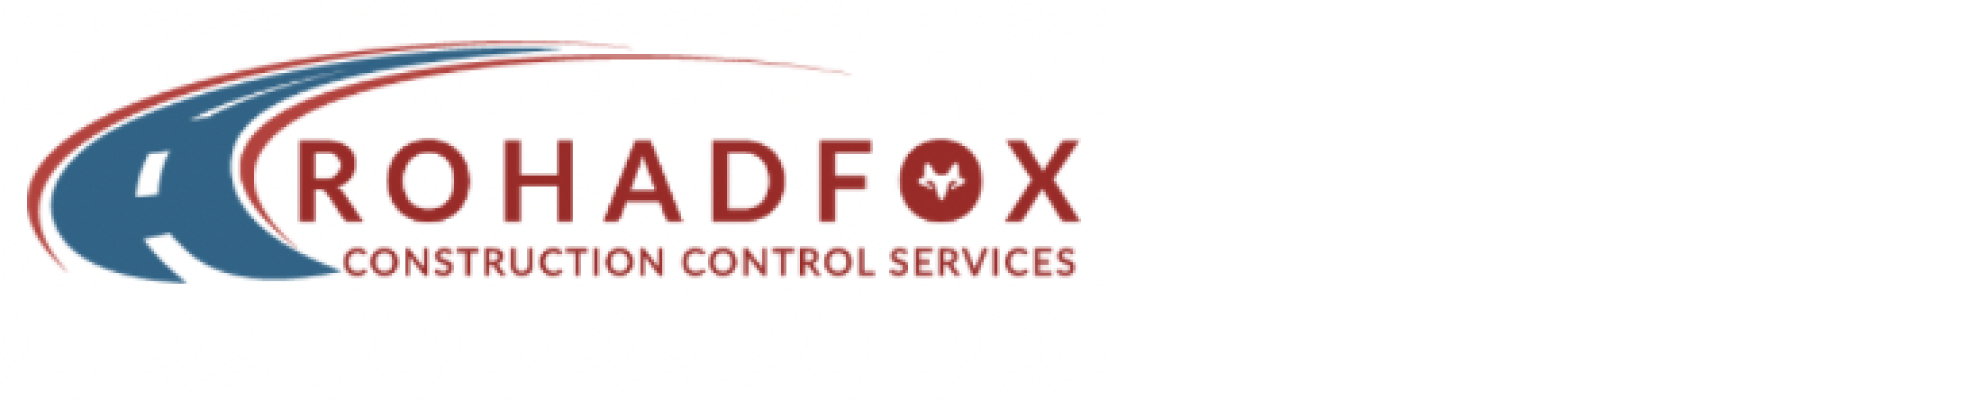 Rohadfox logo